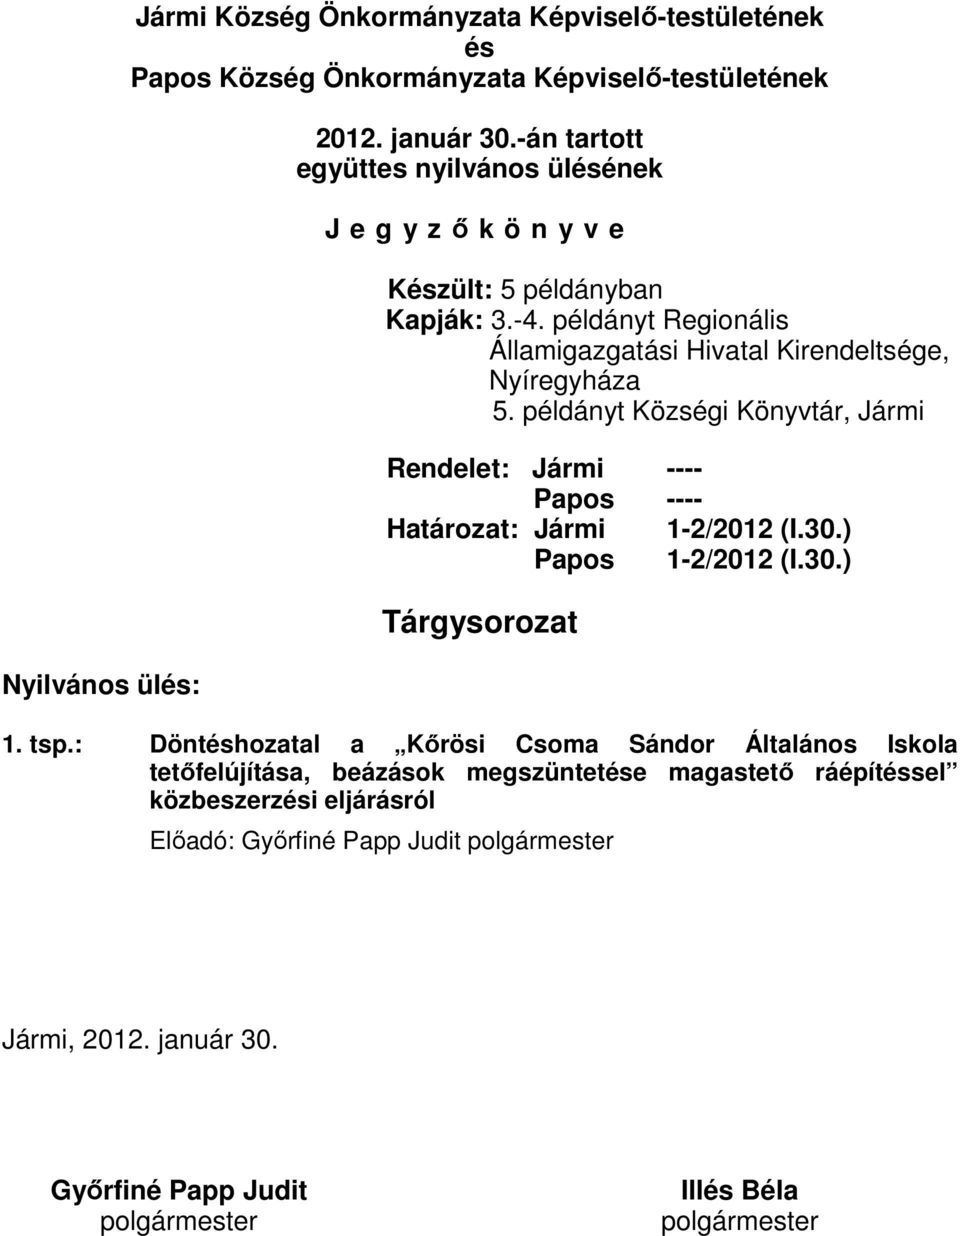 példányt Községi Könyvtár, Jármi Rendelet: Jármi ---- Papos ---- Határozat: Jármi 1-2/2012 (I.30.) Papos 1-2/2012 (I.30.) Tárgysorozat 1. tsp.